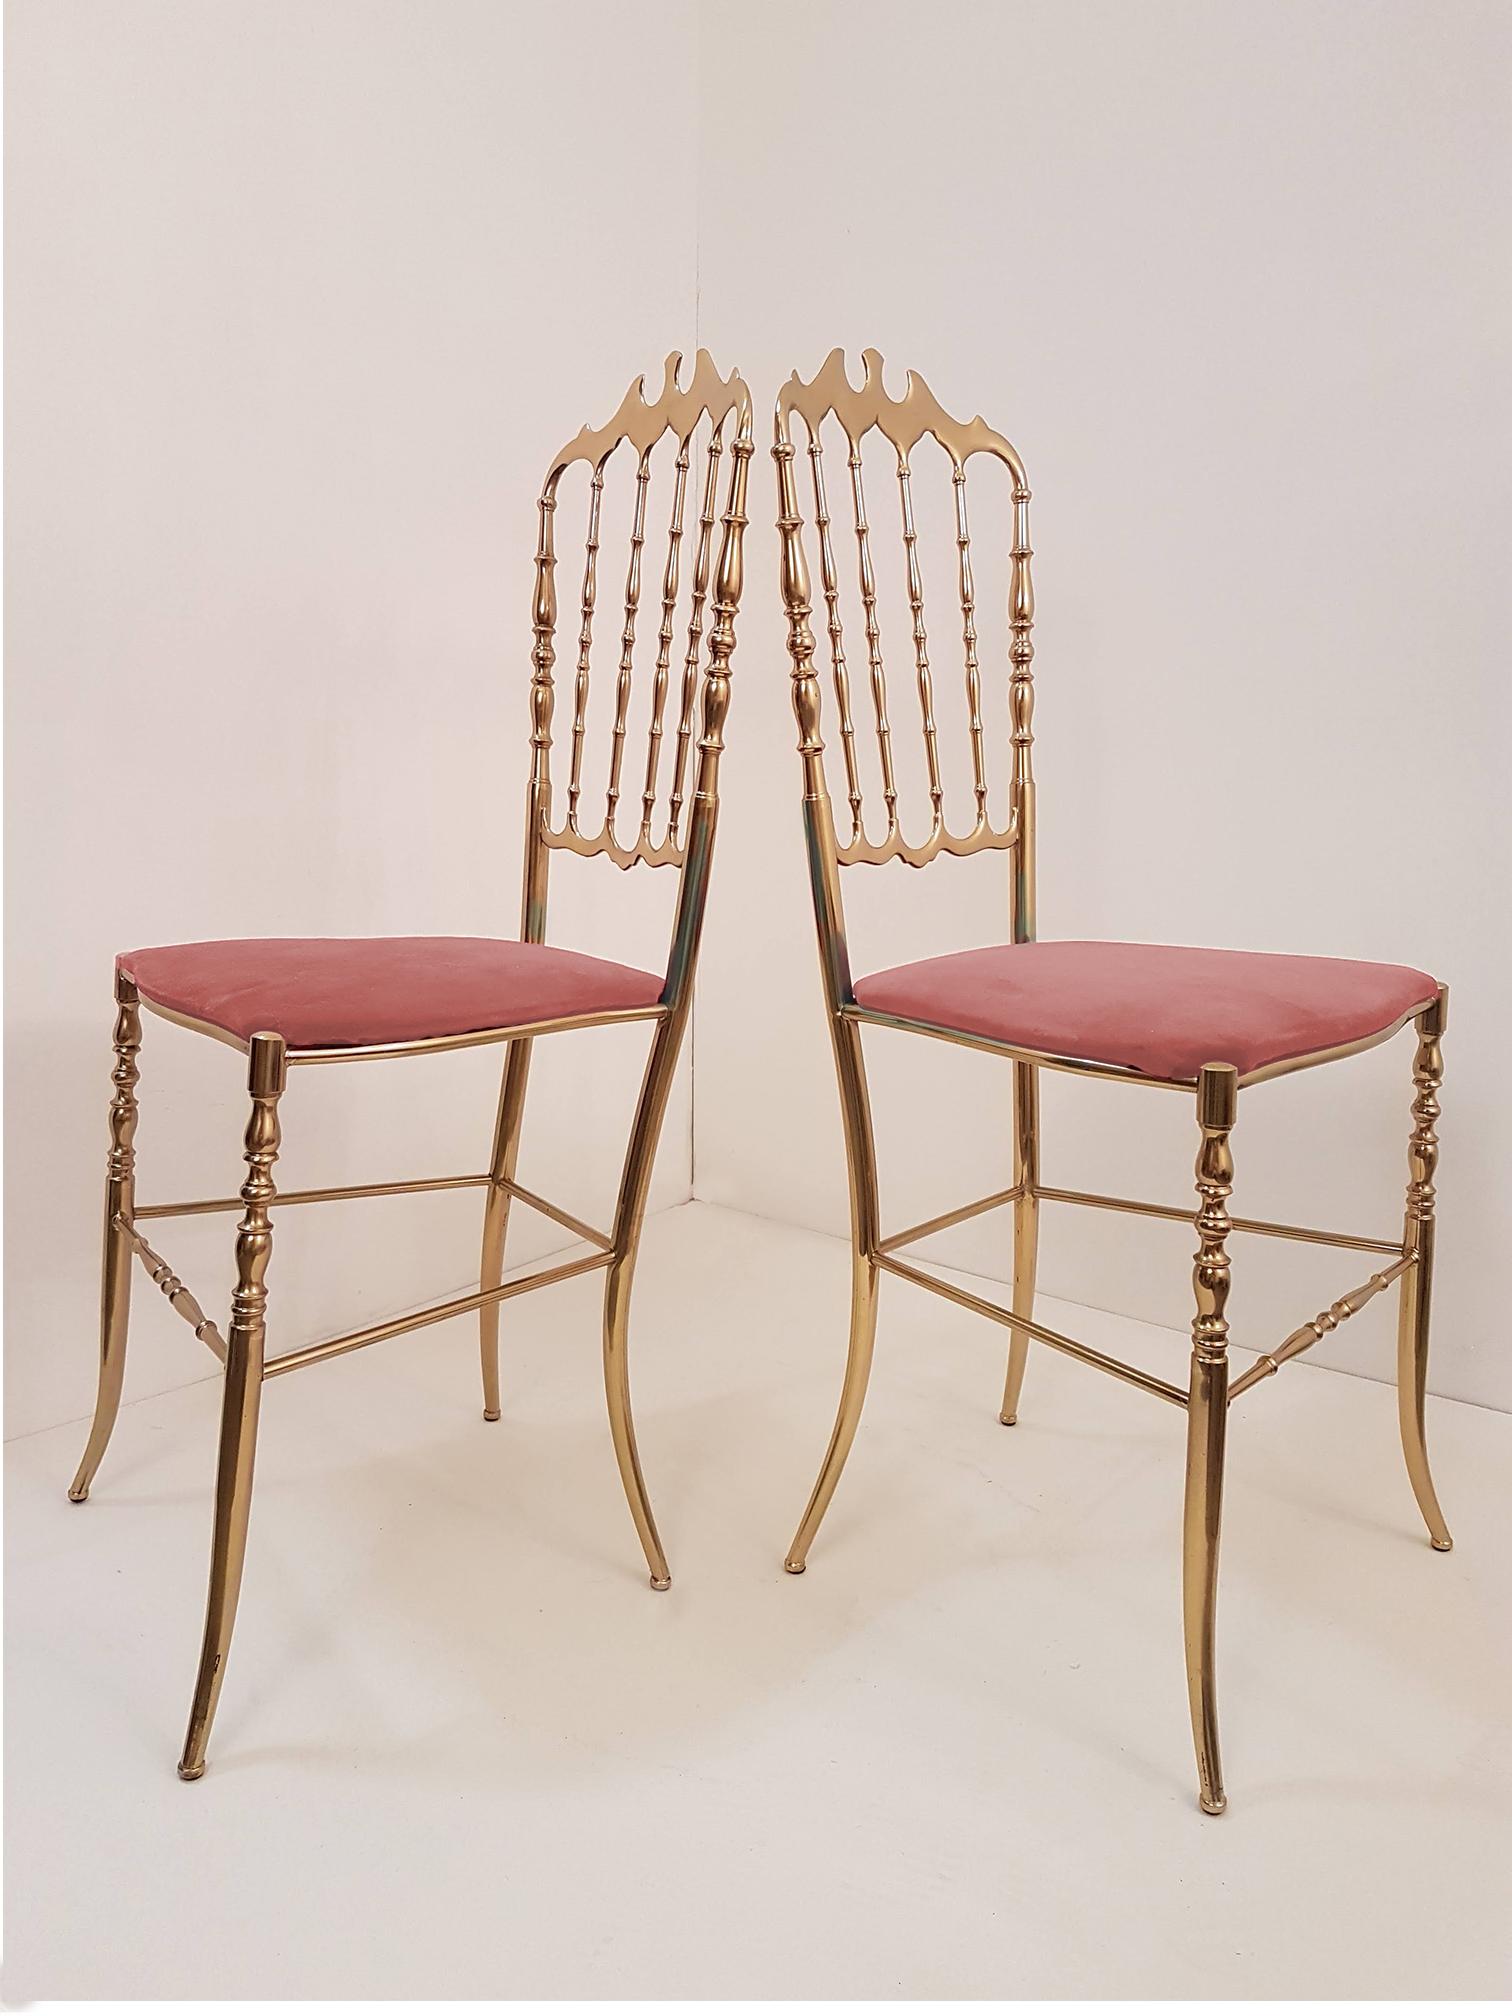 20th Century Pair of Italian Massive Brass Chairs by Chiavari, Upholstery Pink Velvet